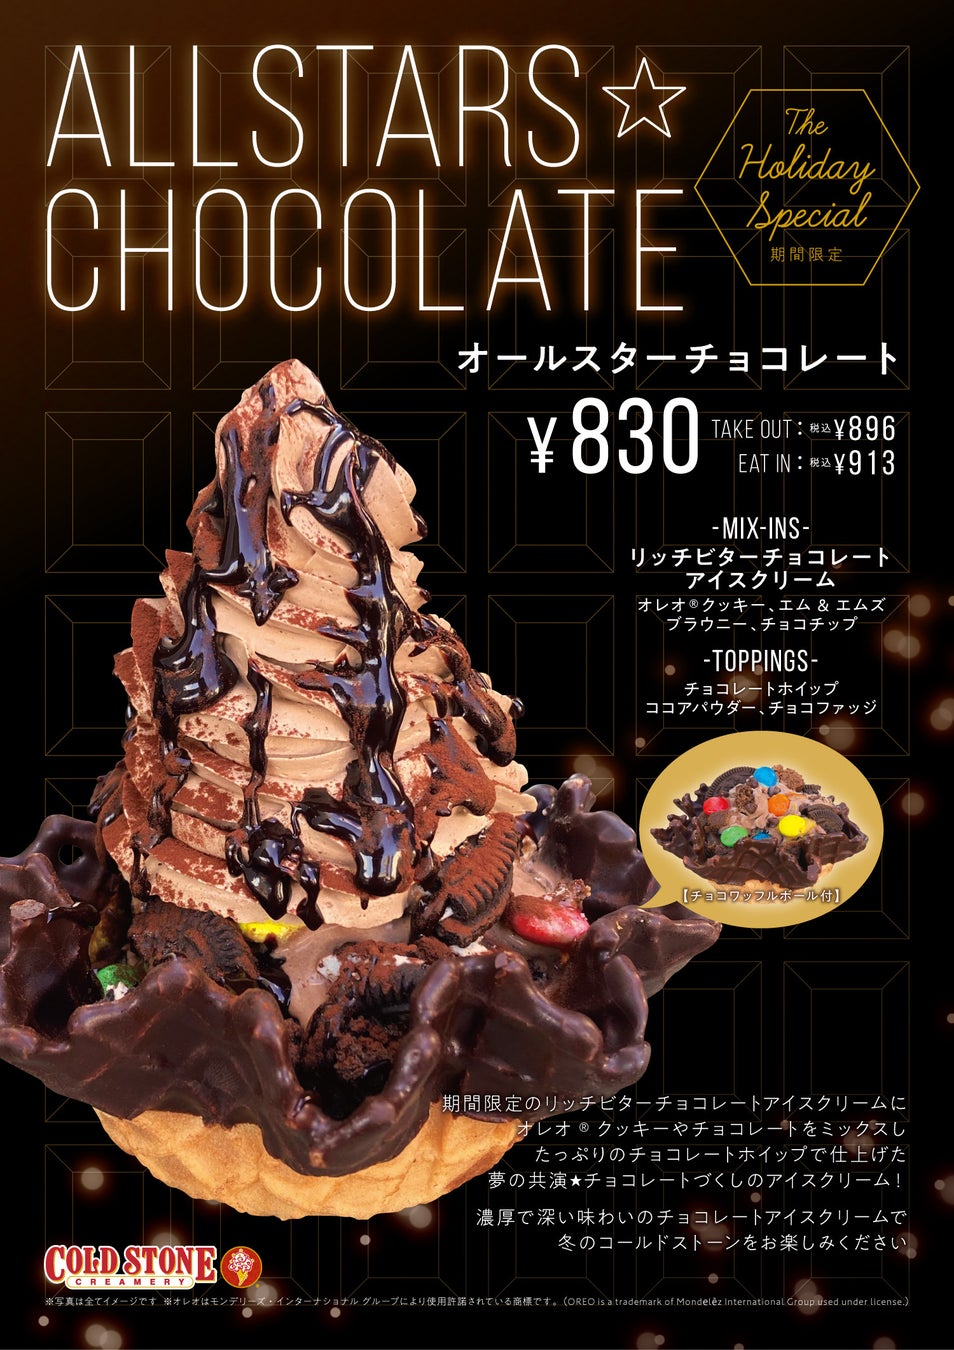 【夢のチョコレートづくし】期間限定フレーバー “リッチビターチョコレートアイスクリーム” を使用した『オールスターチョコレート』12/1発売！